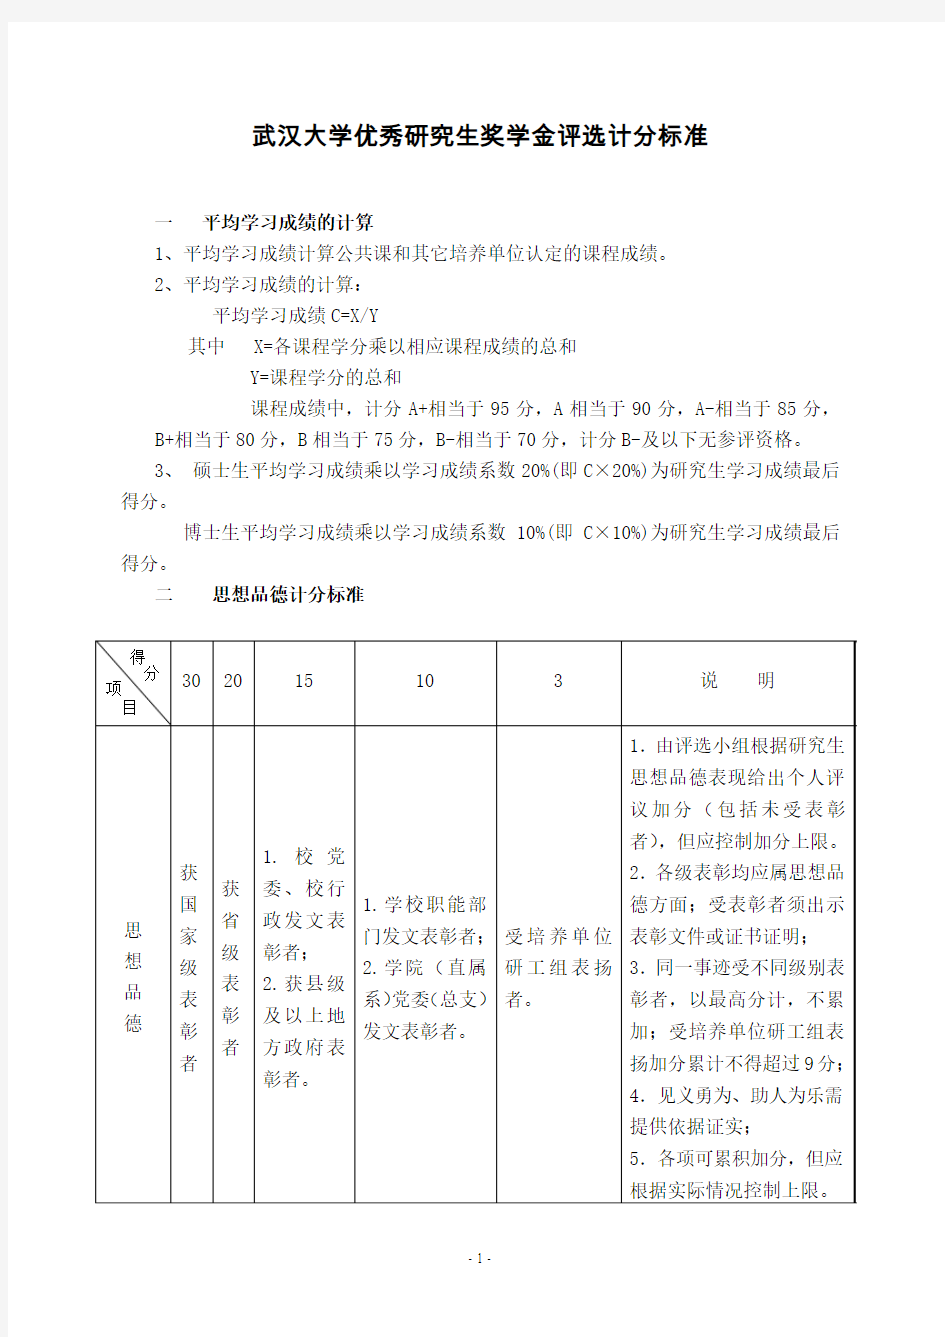 武汉大学优秀研究生奖学金评选计分标准